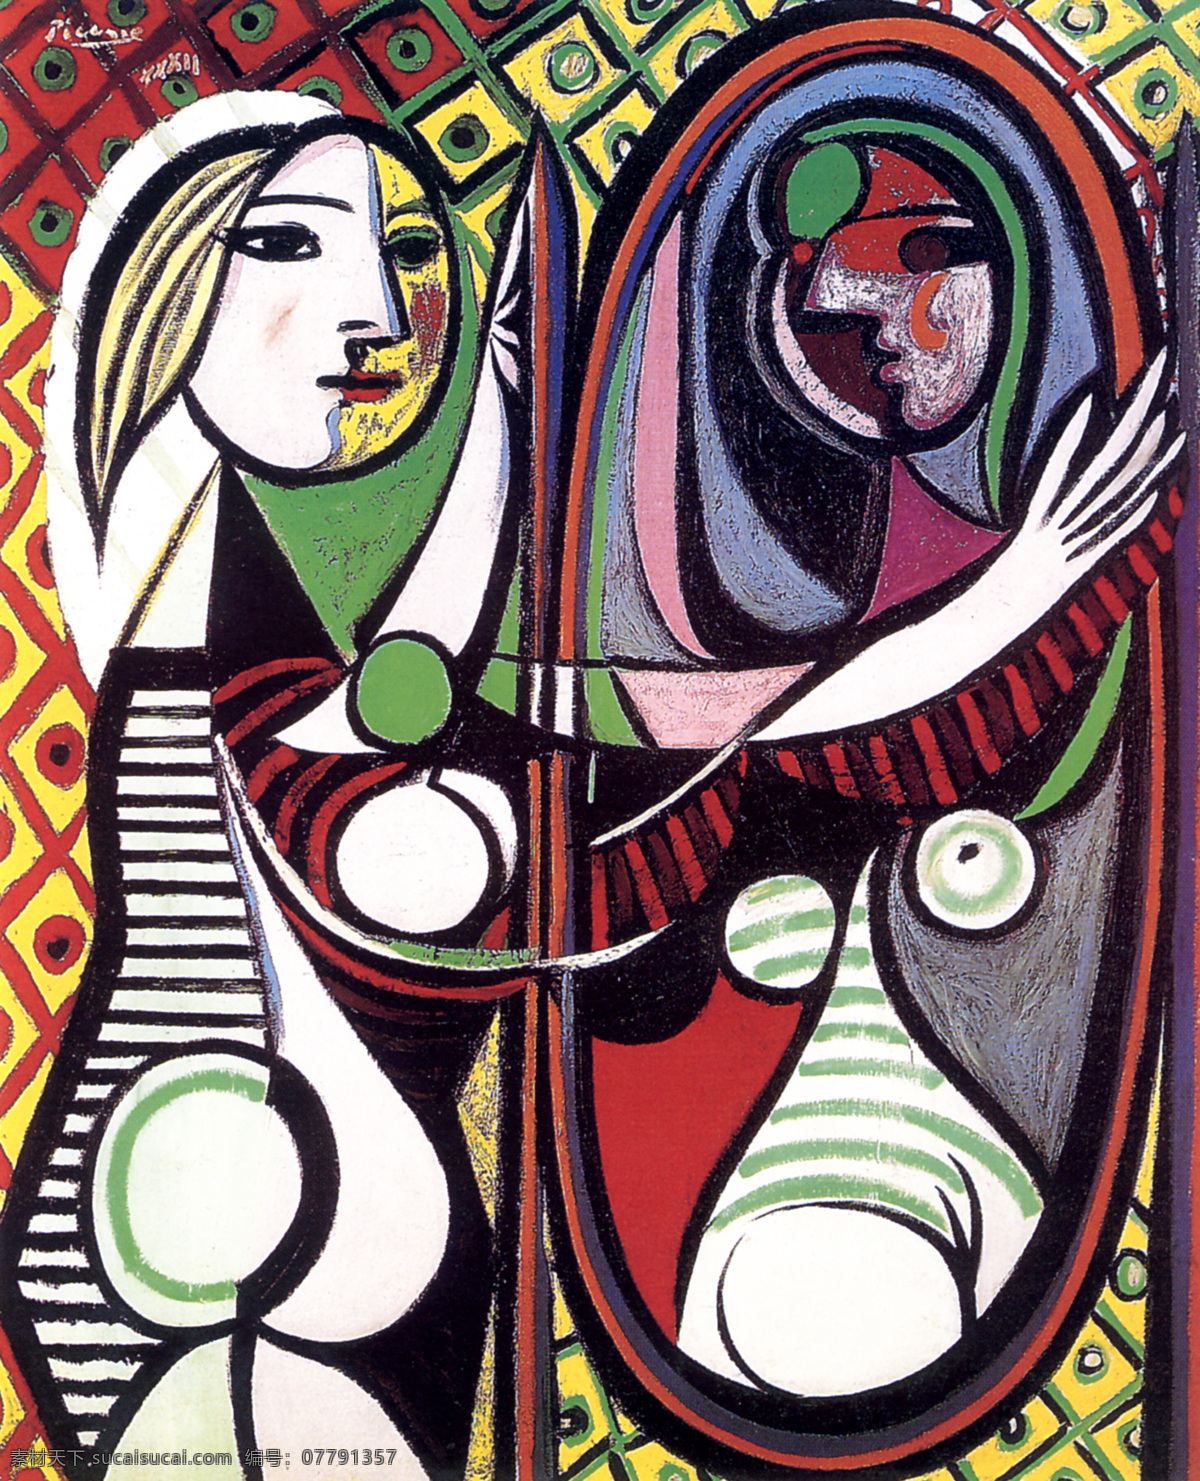 毕加索抽象画 毕加索 油画 人物 毕加索油画 绘画书法 绘画 名画 绘画艺术 女性 少女 妇女 线条轮廓 女性人体 人体 抽象油画 毕加索名画 世界名画 名画欣赏 闭合路径 矢量 文化艺术 立体派 抽象派